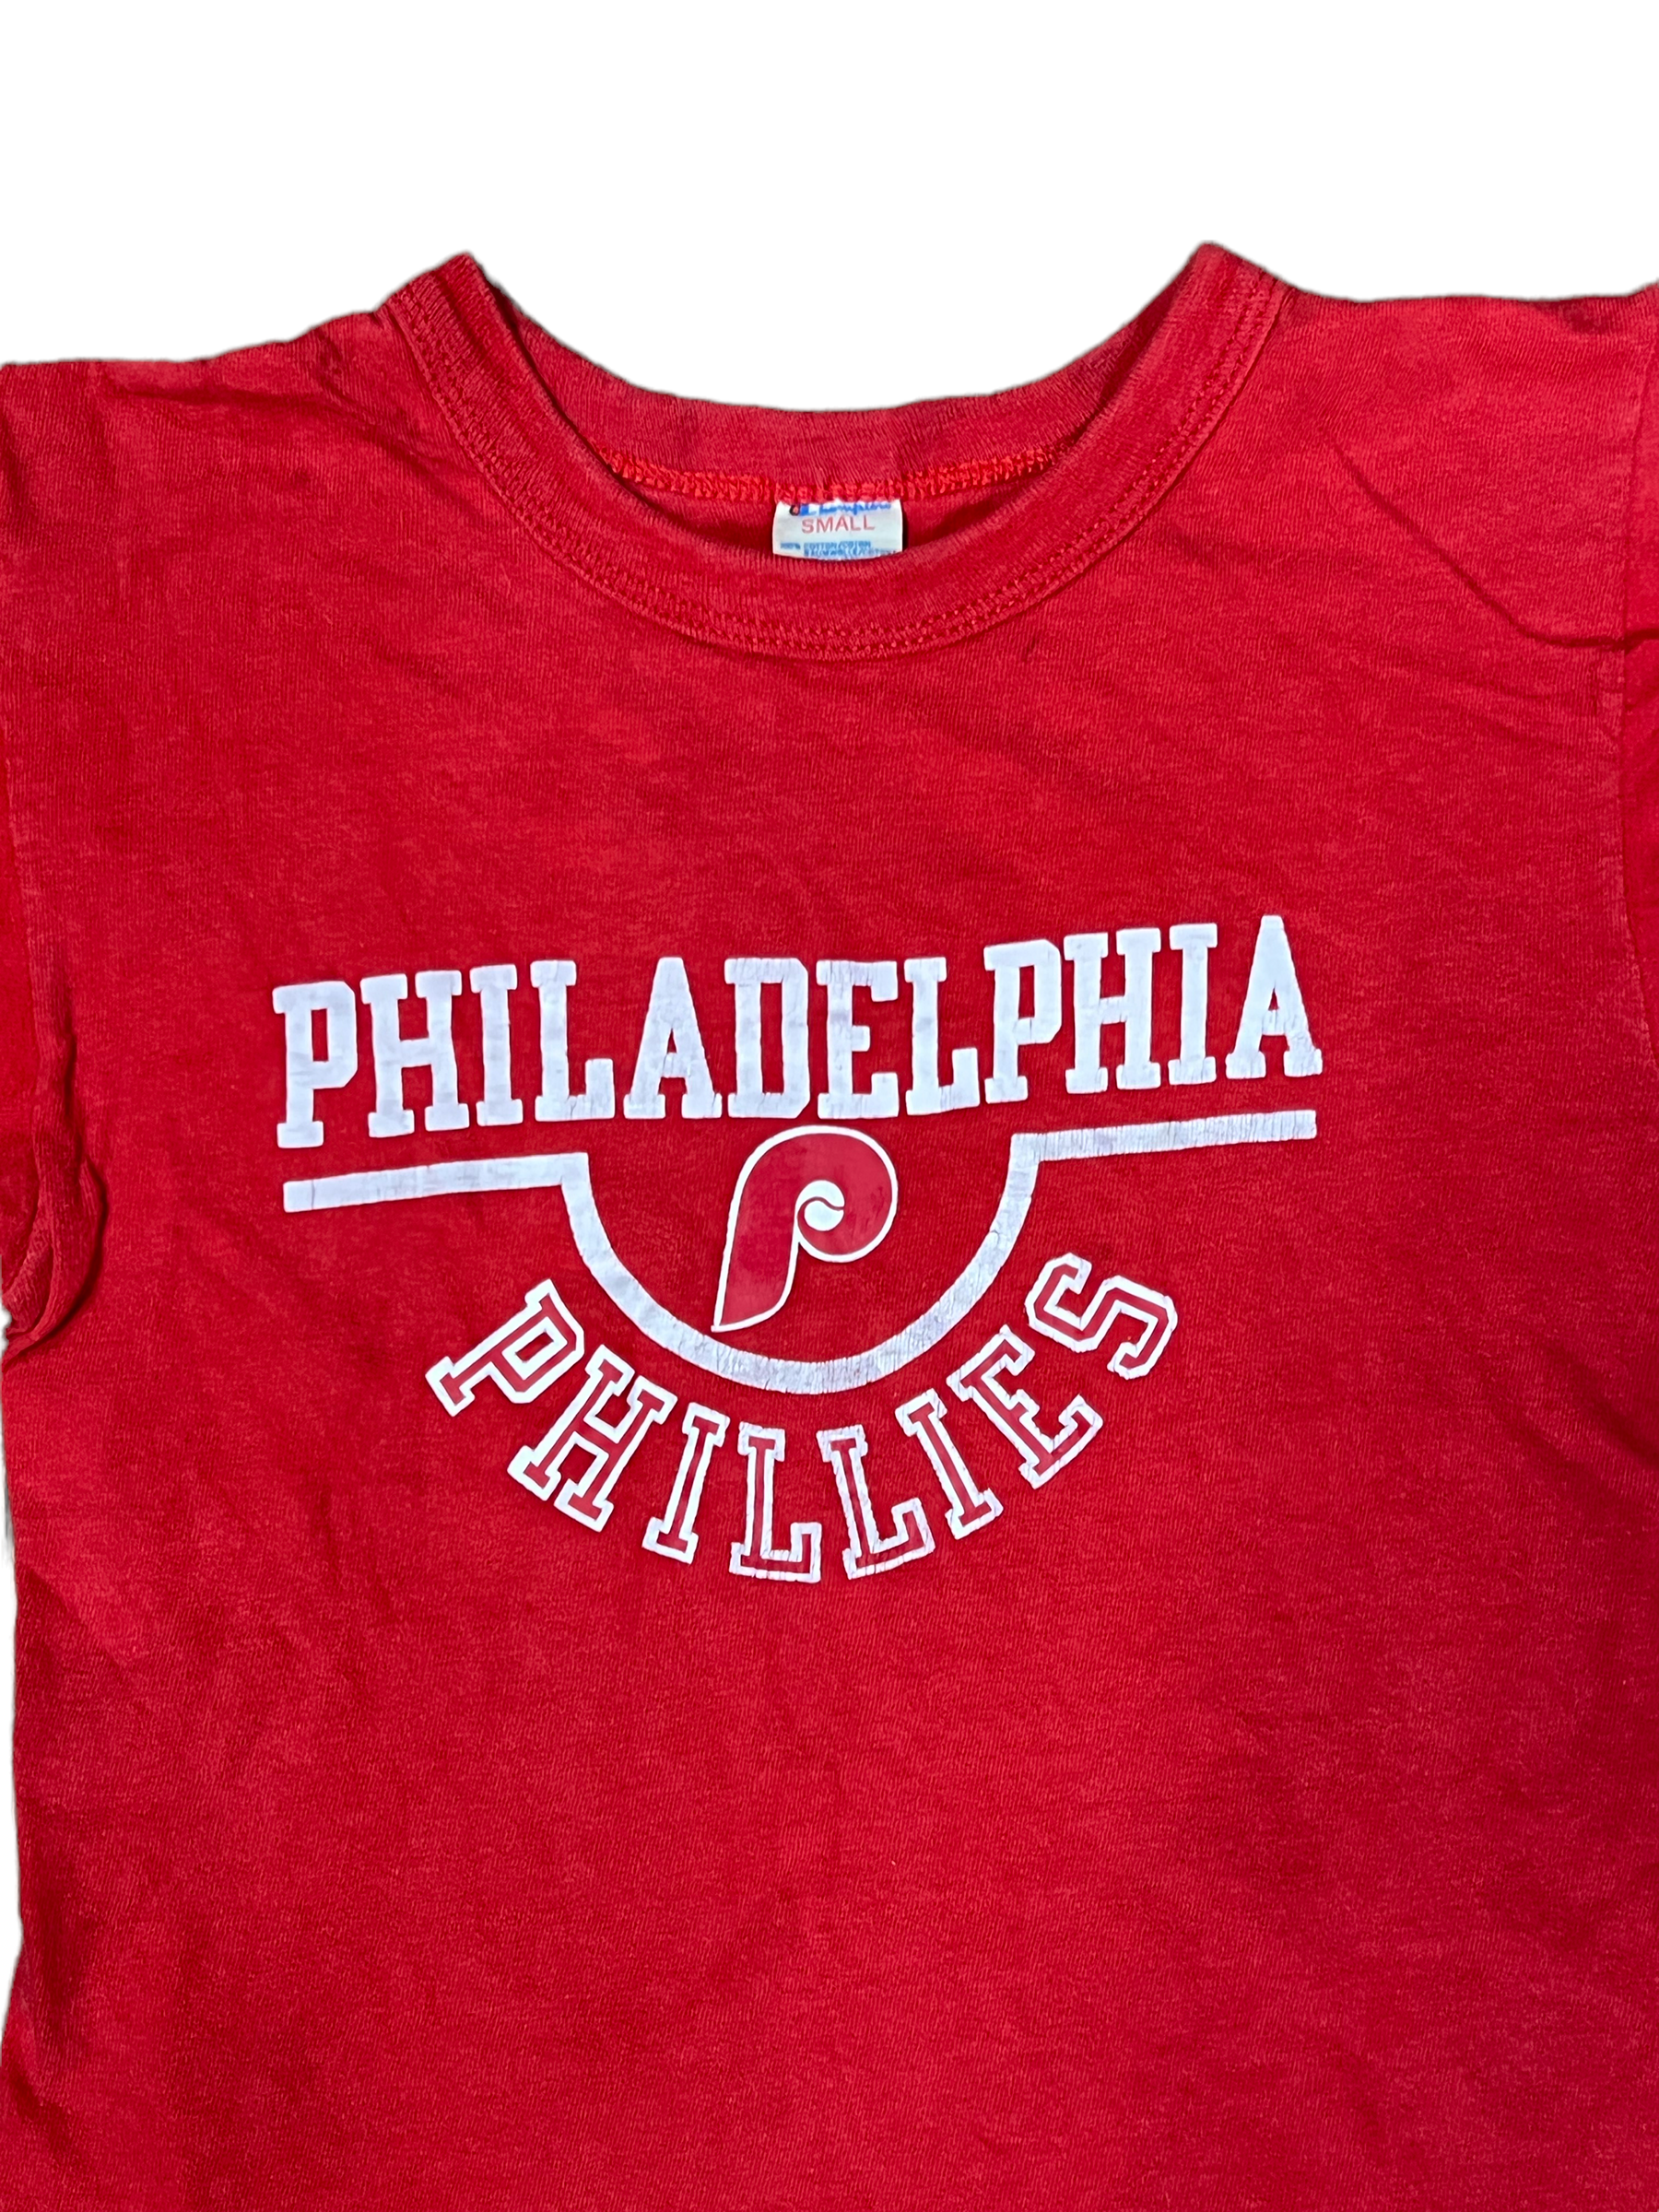 Vintage Philadelphia Phillies 1980's Baseball Jacket